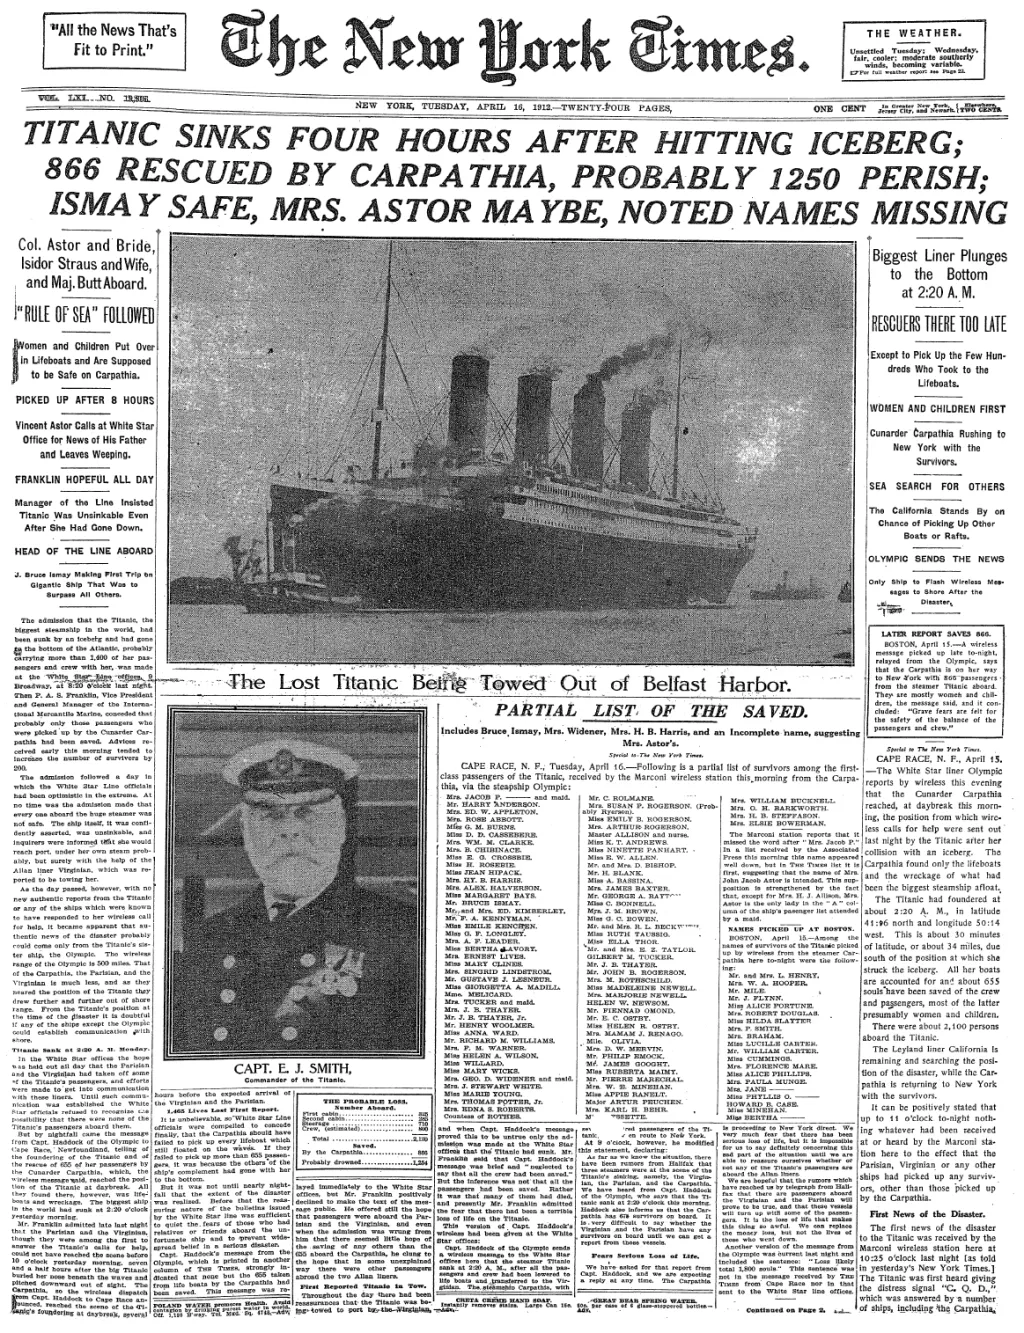 Zpráva o potopení tehdy největší lodi světa se rozšířila velmi rychle. Snímek zachycuje kopii novin, které vyšly den po havárii